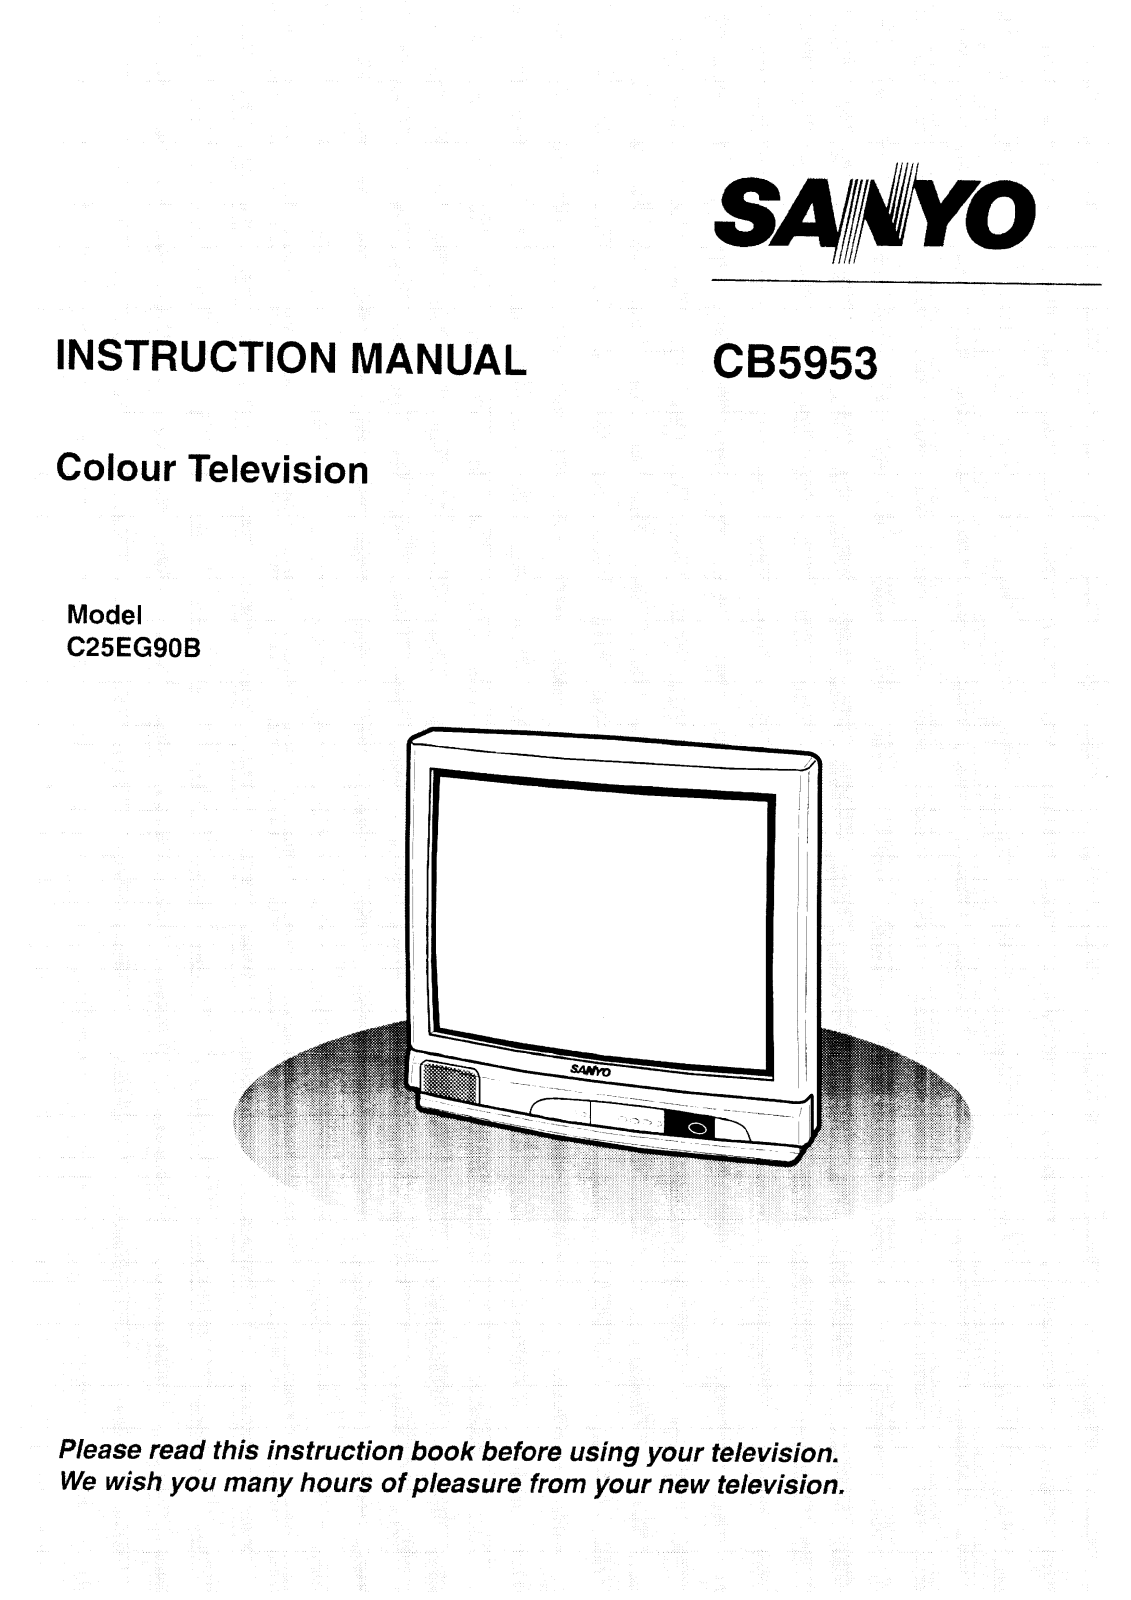 Sanyo CB5953 Instruction Manual